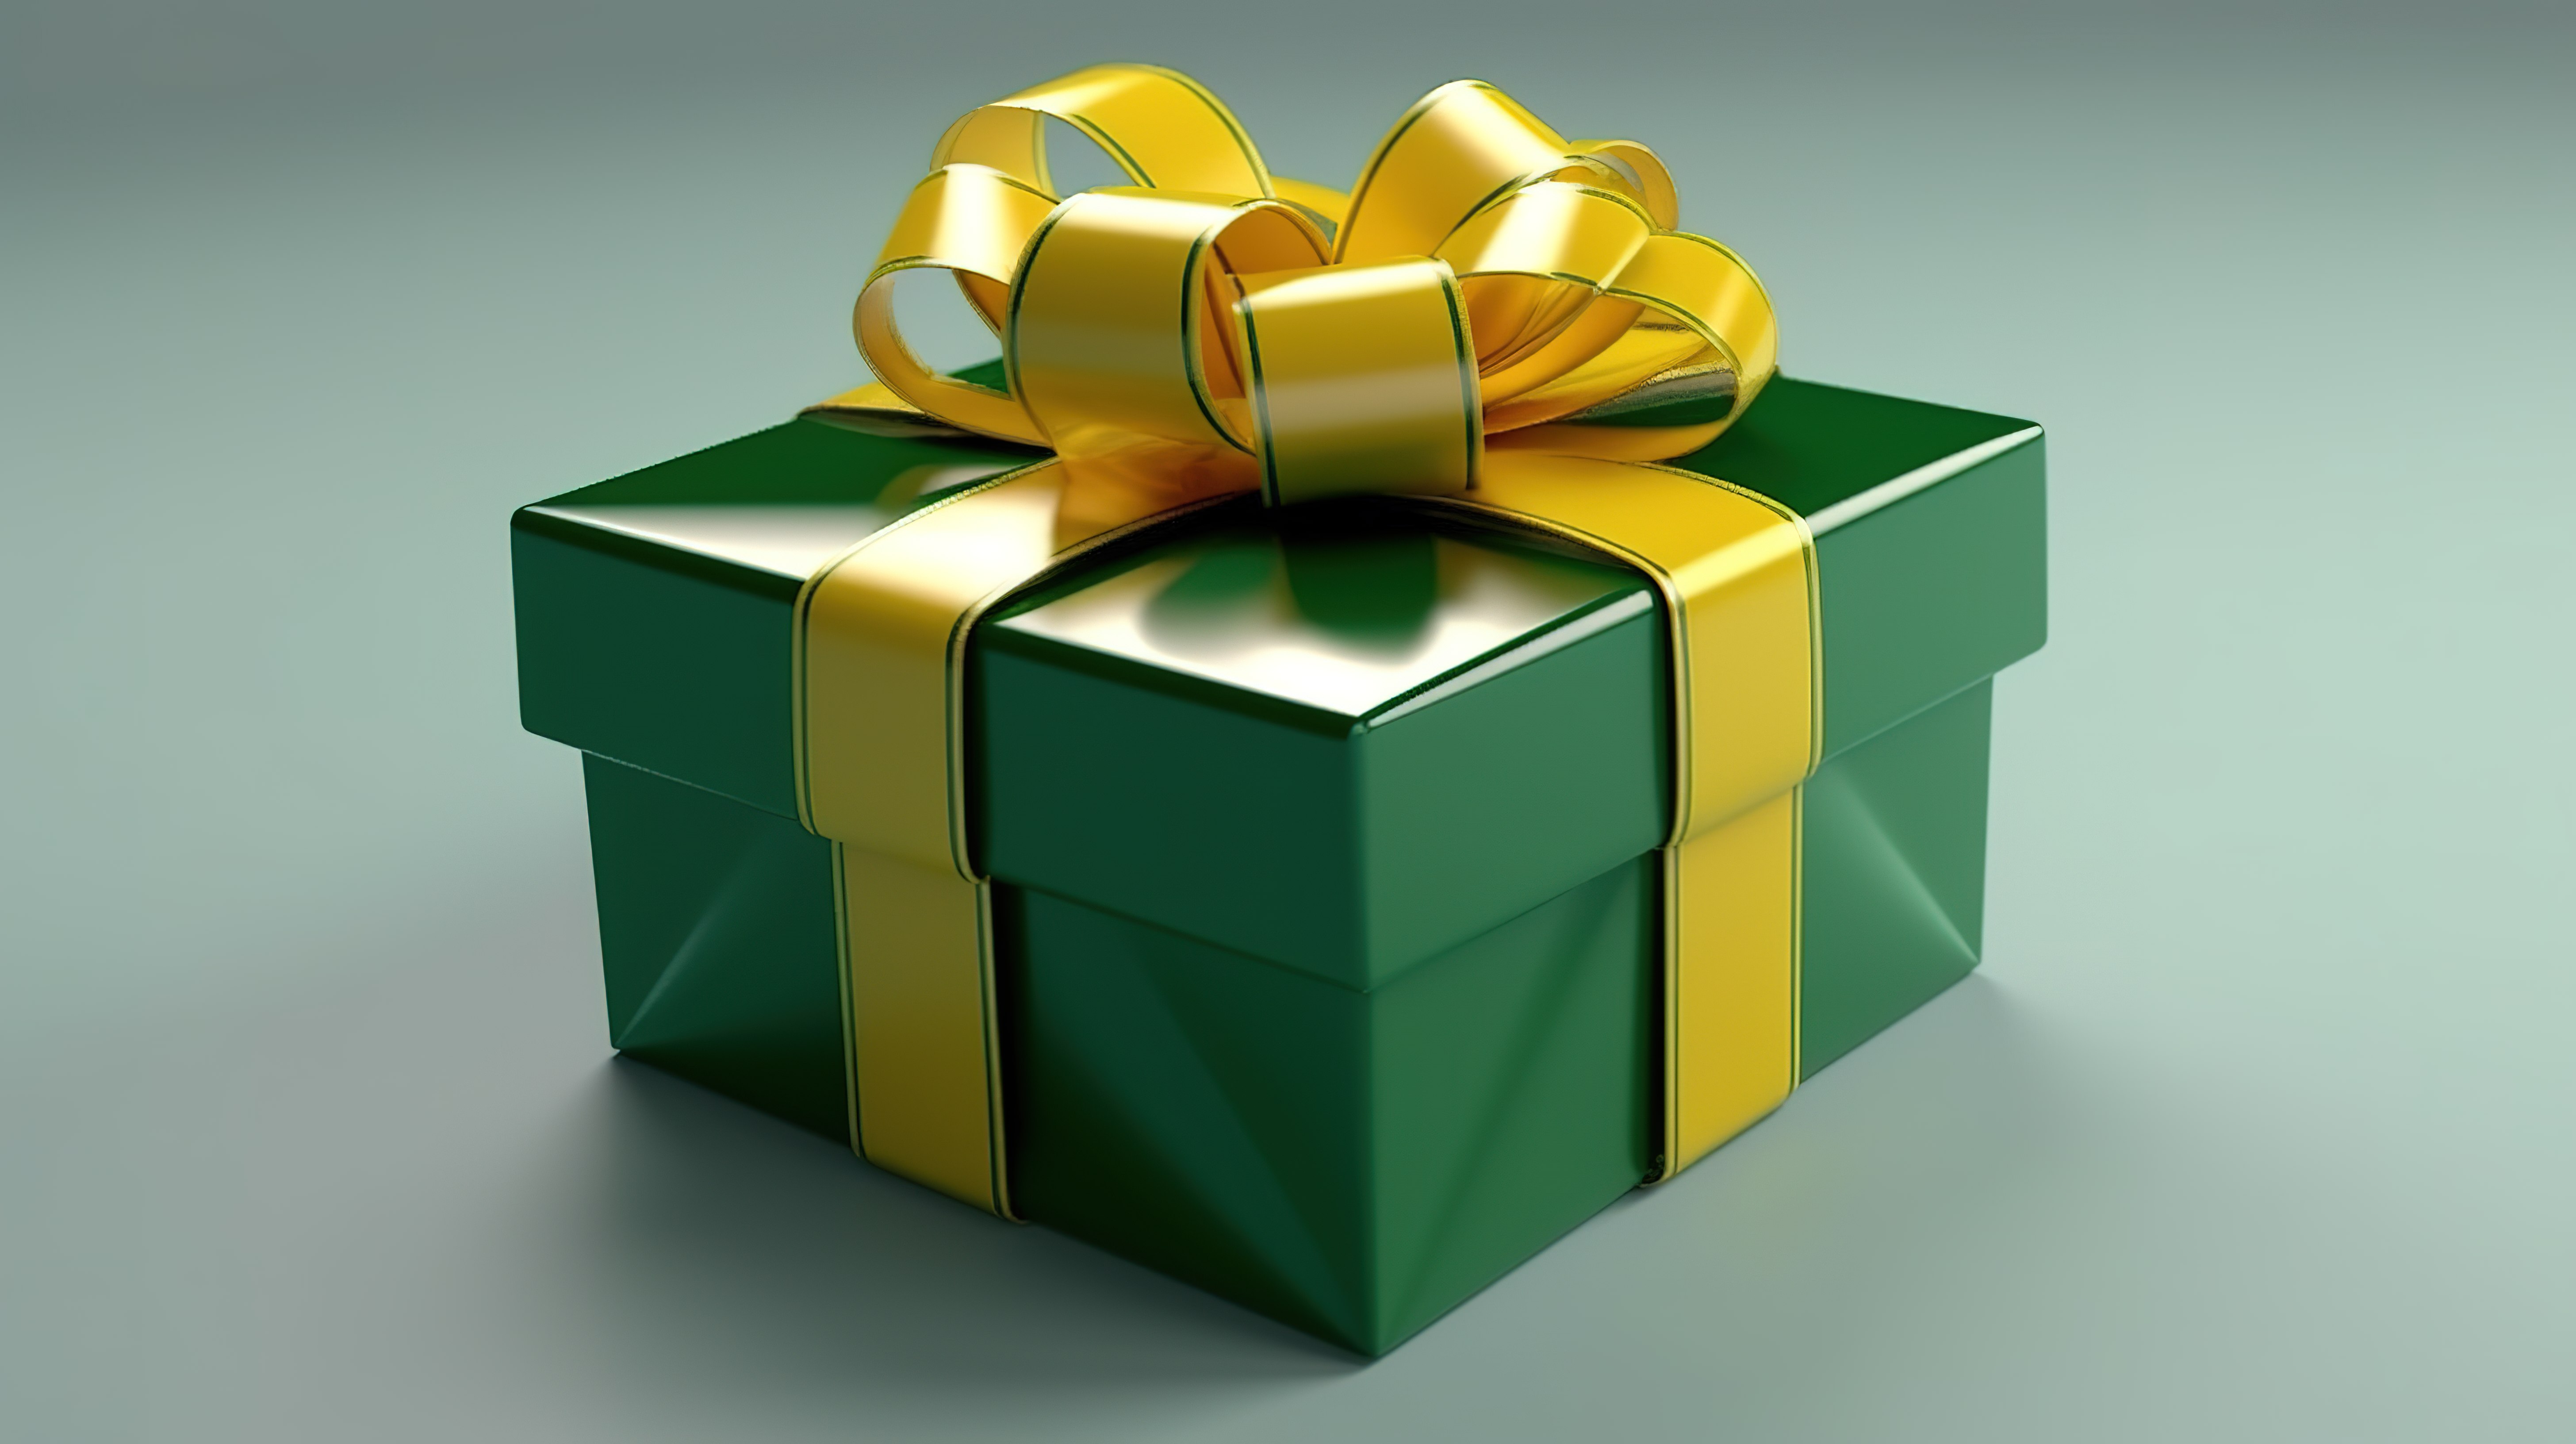 用黄丝带和蝴蝶结装饰的 3d 绿色礼品盒图片